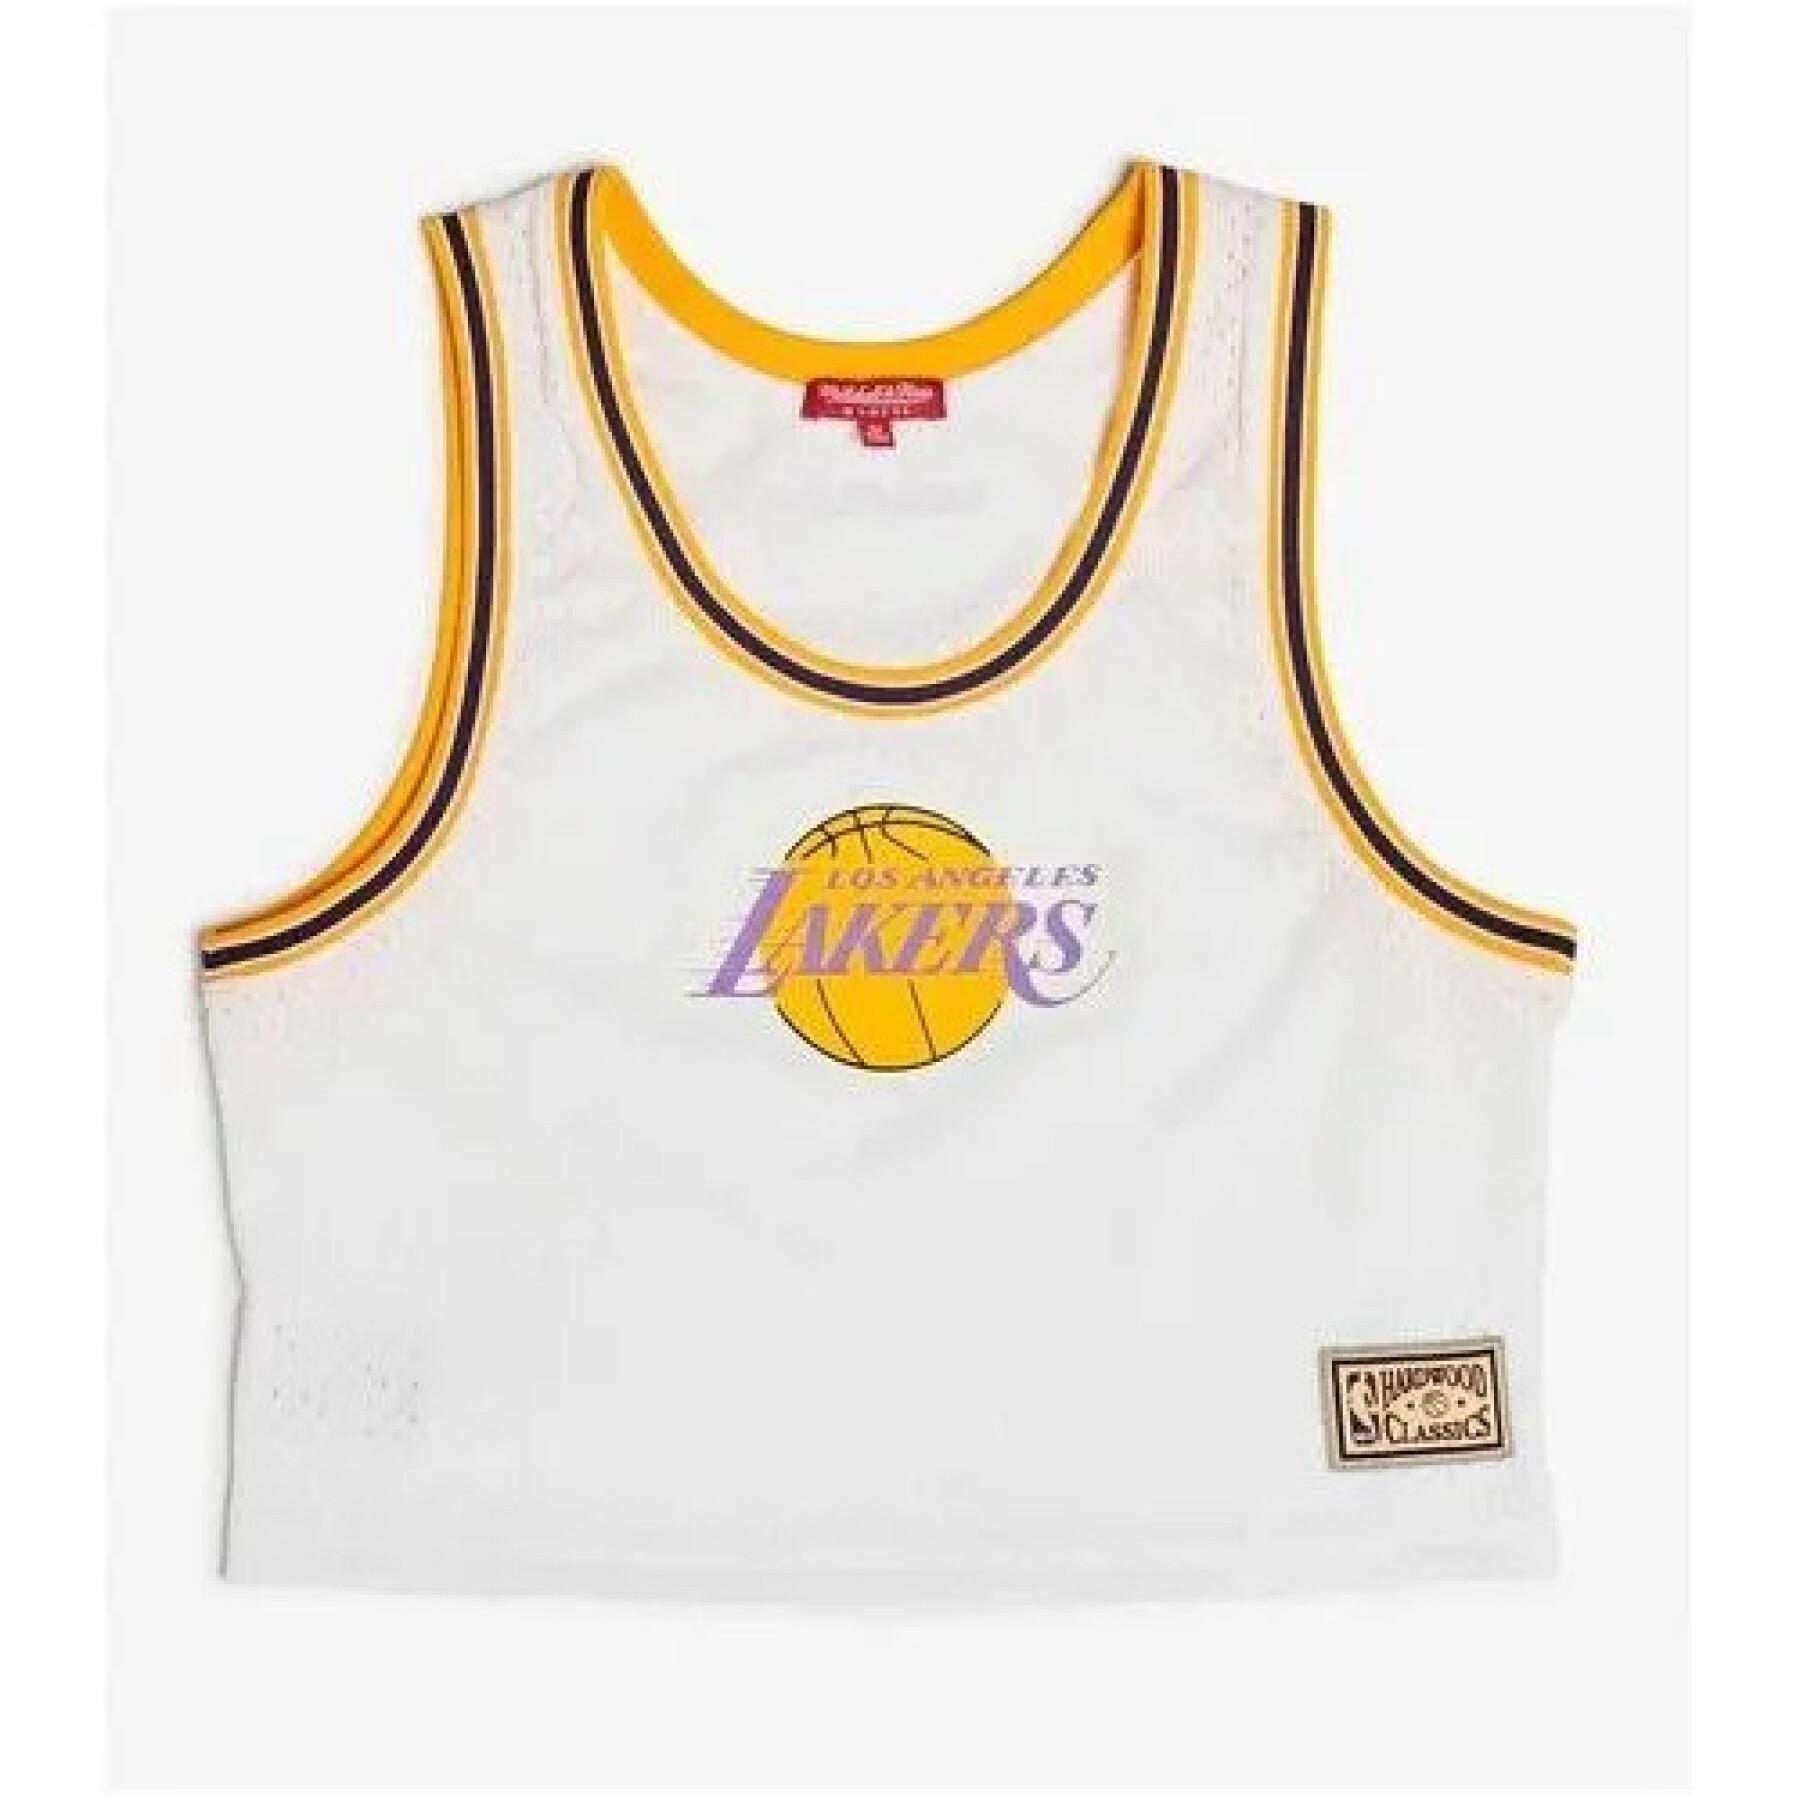 Women's jersey Los Angeles Lakers flip